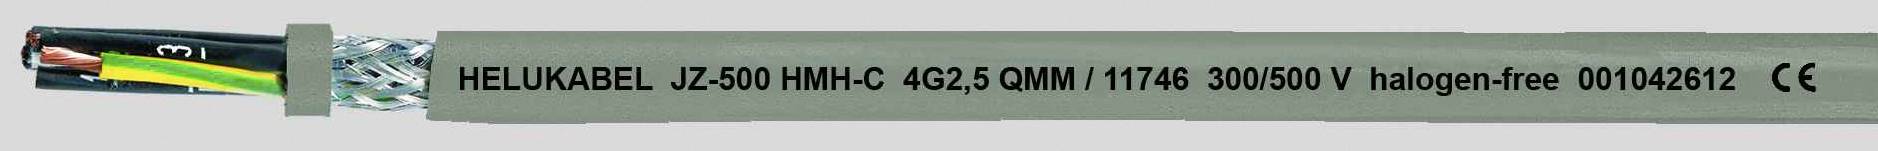 HELUKABEL JZ-500 HMH-C Steuerleitung 5 G 0.50 mm² Grau 11659-1000 1000 m